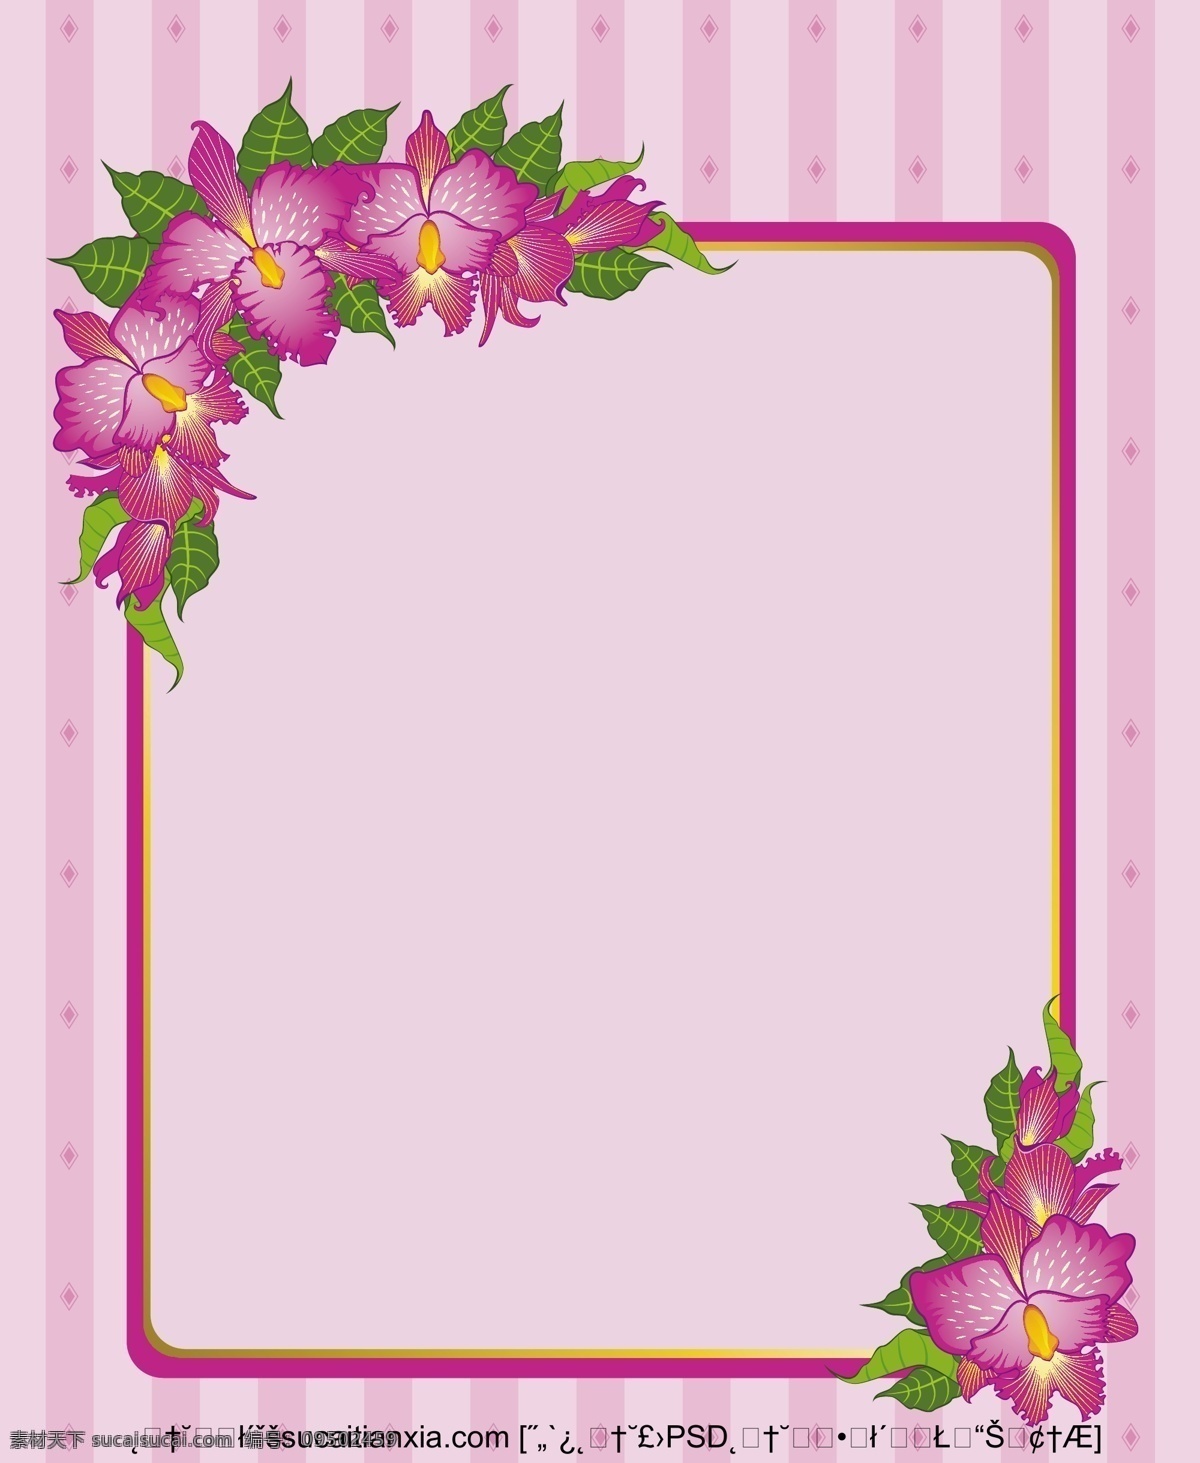 矢量 浪漫 紫罗兰 底纹 装饰 花卉边框 鲜花相框 紫色边框 紫罗兰色调 矢量图 花纹花边